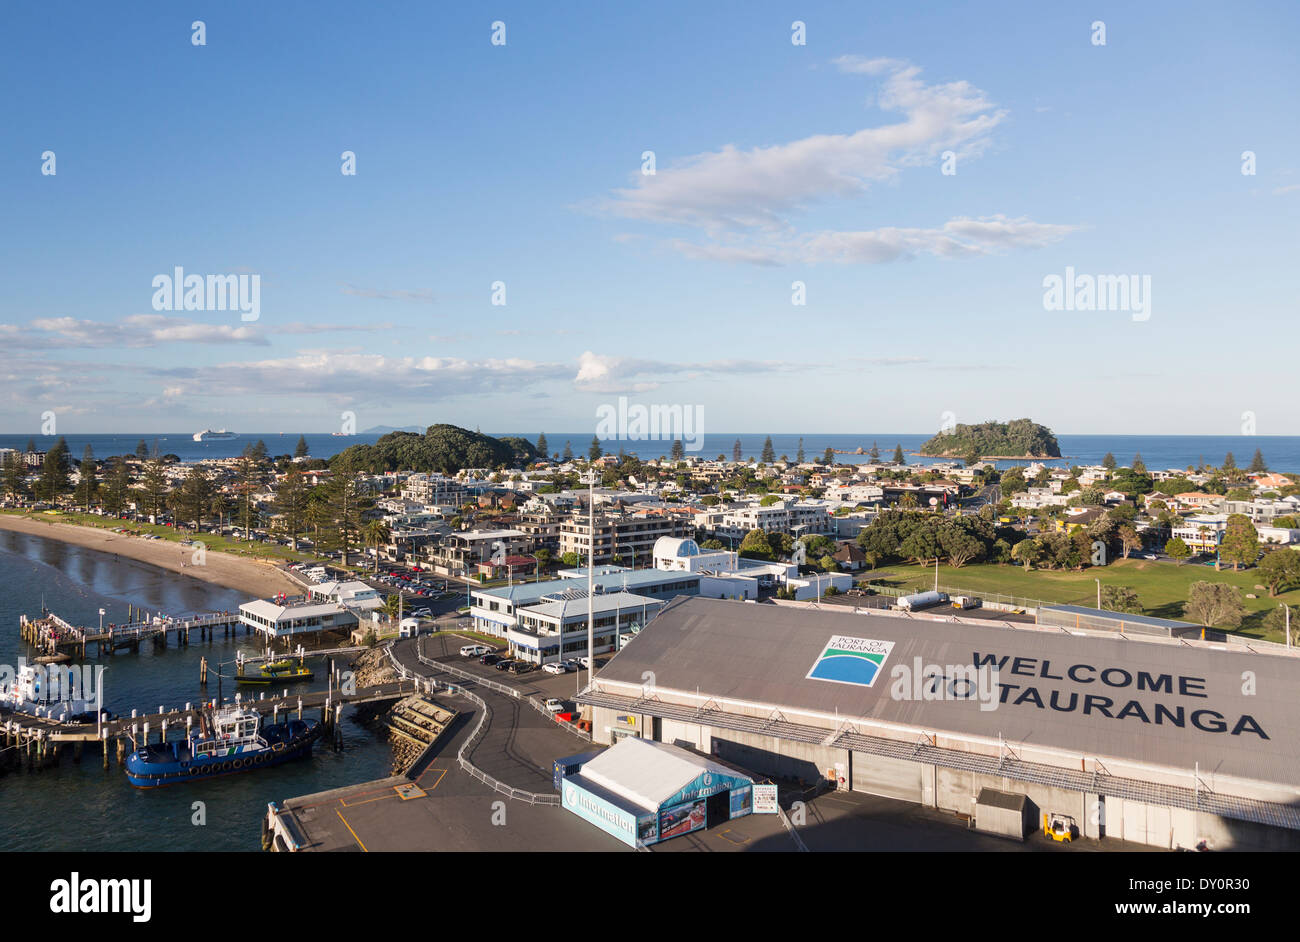 Tauranga, Nueva Zelanda - Descripción general de la ciudad y la zona del puerto Foto de stock